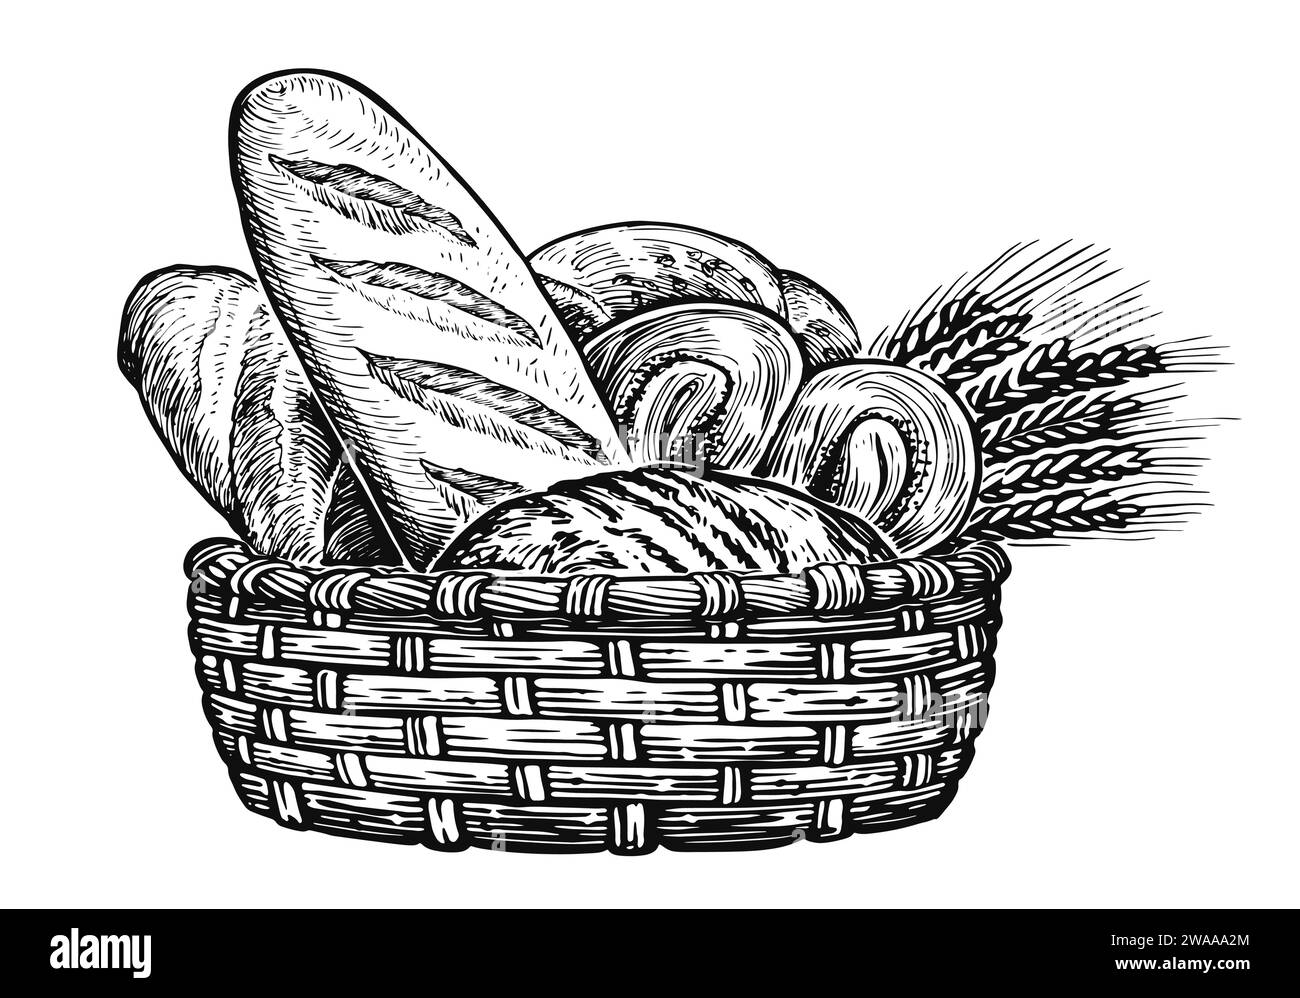 Korb mit Weizen und frischem Brot. Bäckereiprodukte, Skizze Illustration Stock Vektor